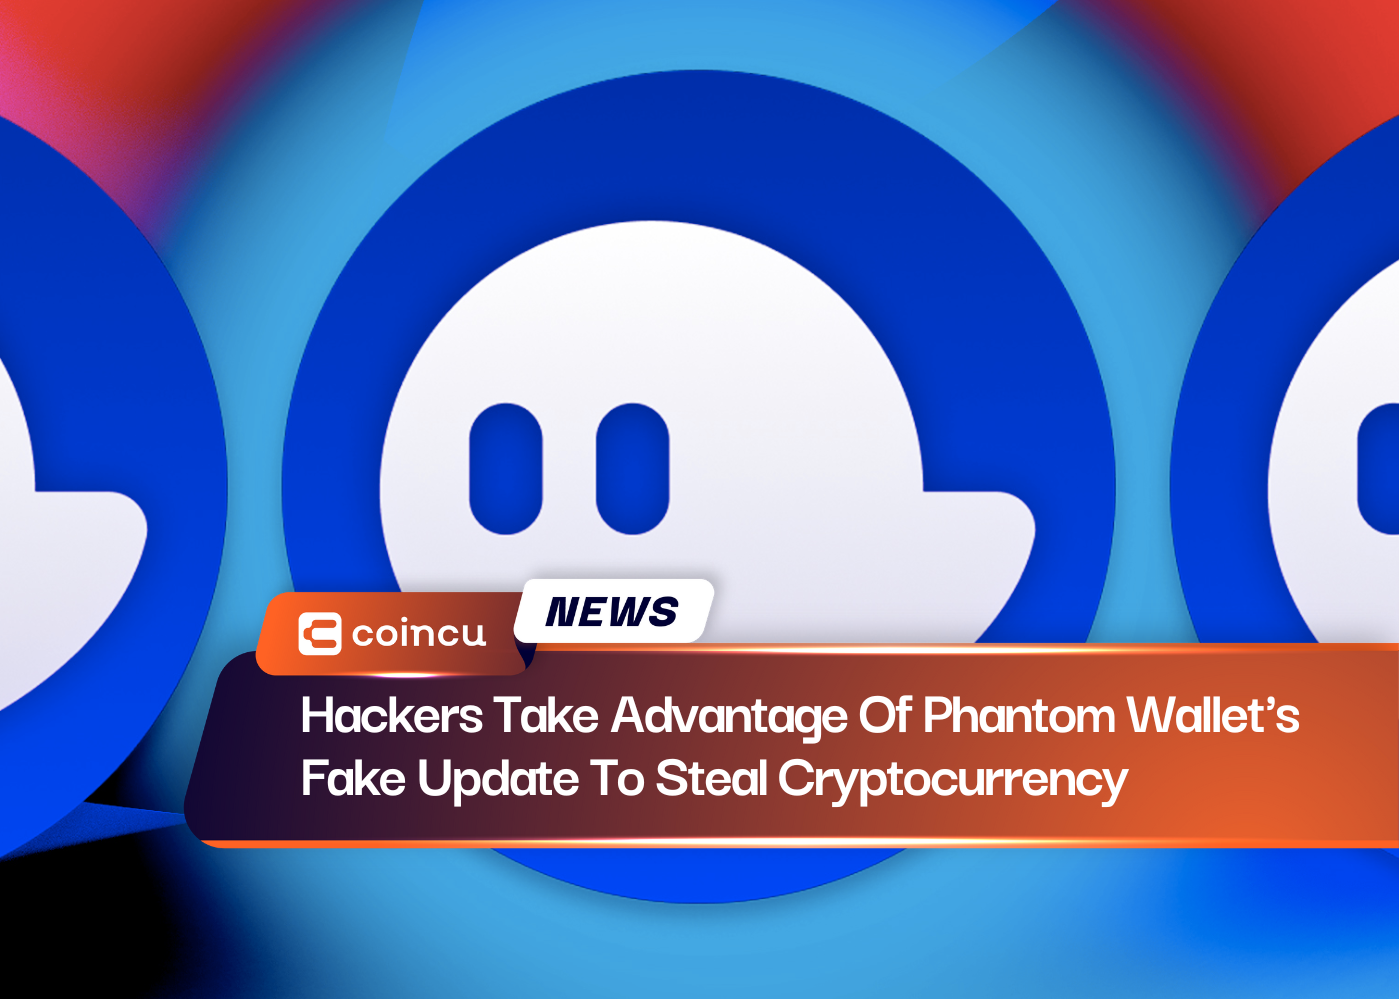 Hackers aproveitam atualização falsa da Phantom Wallet para roubar criptomoeda